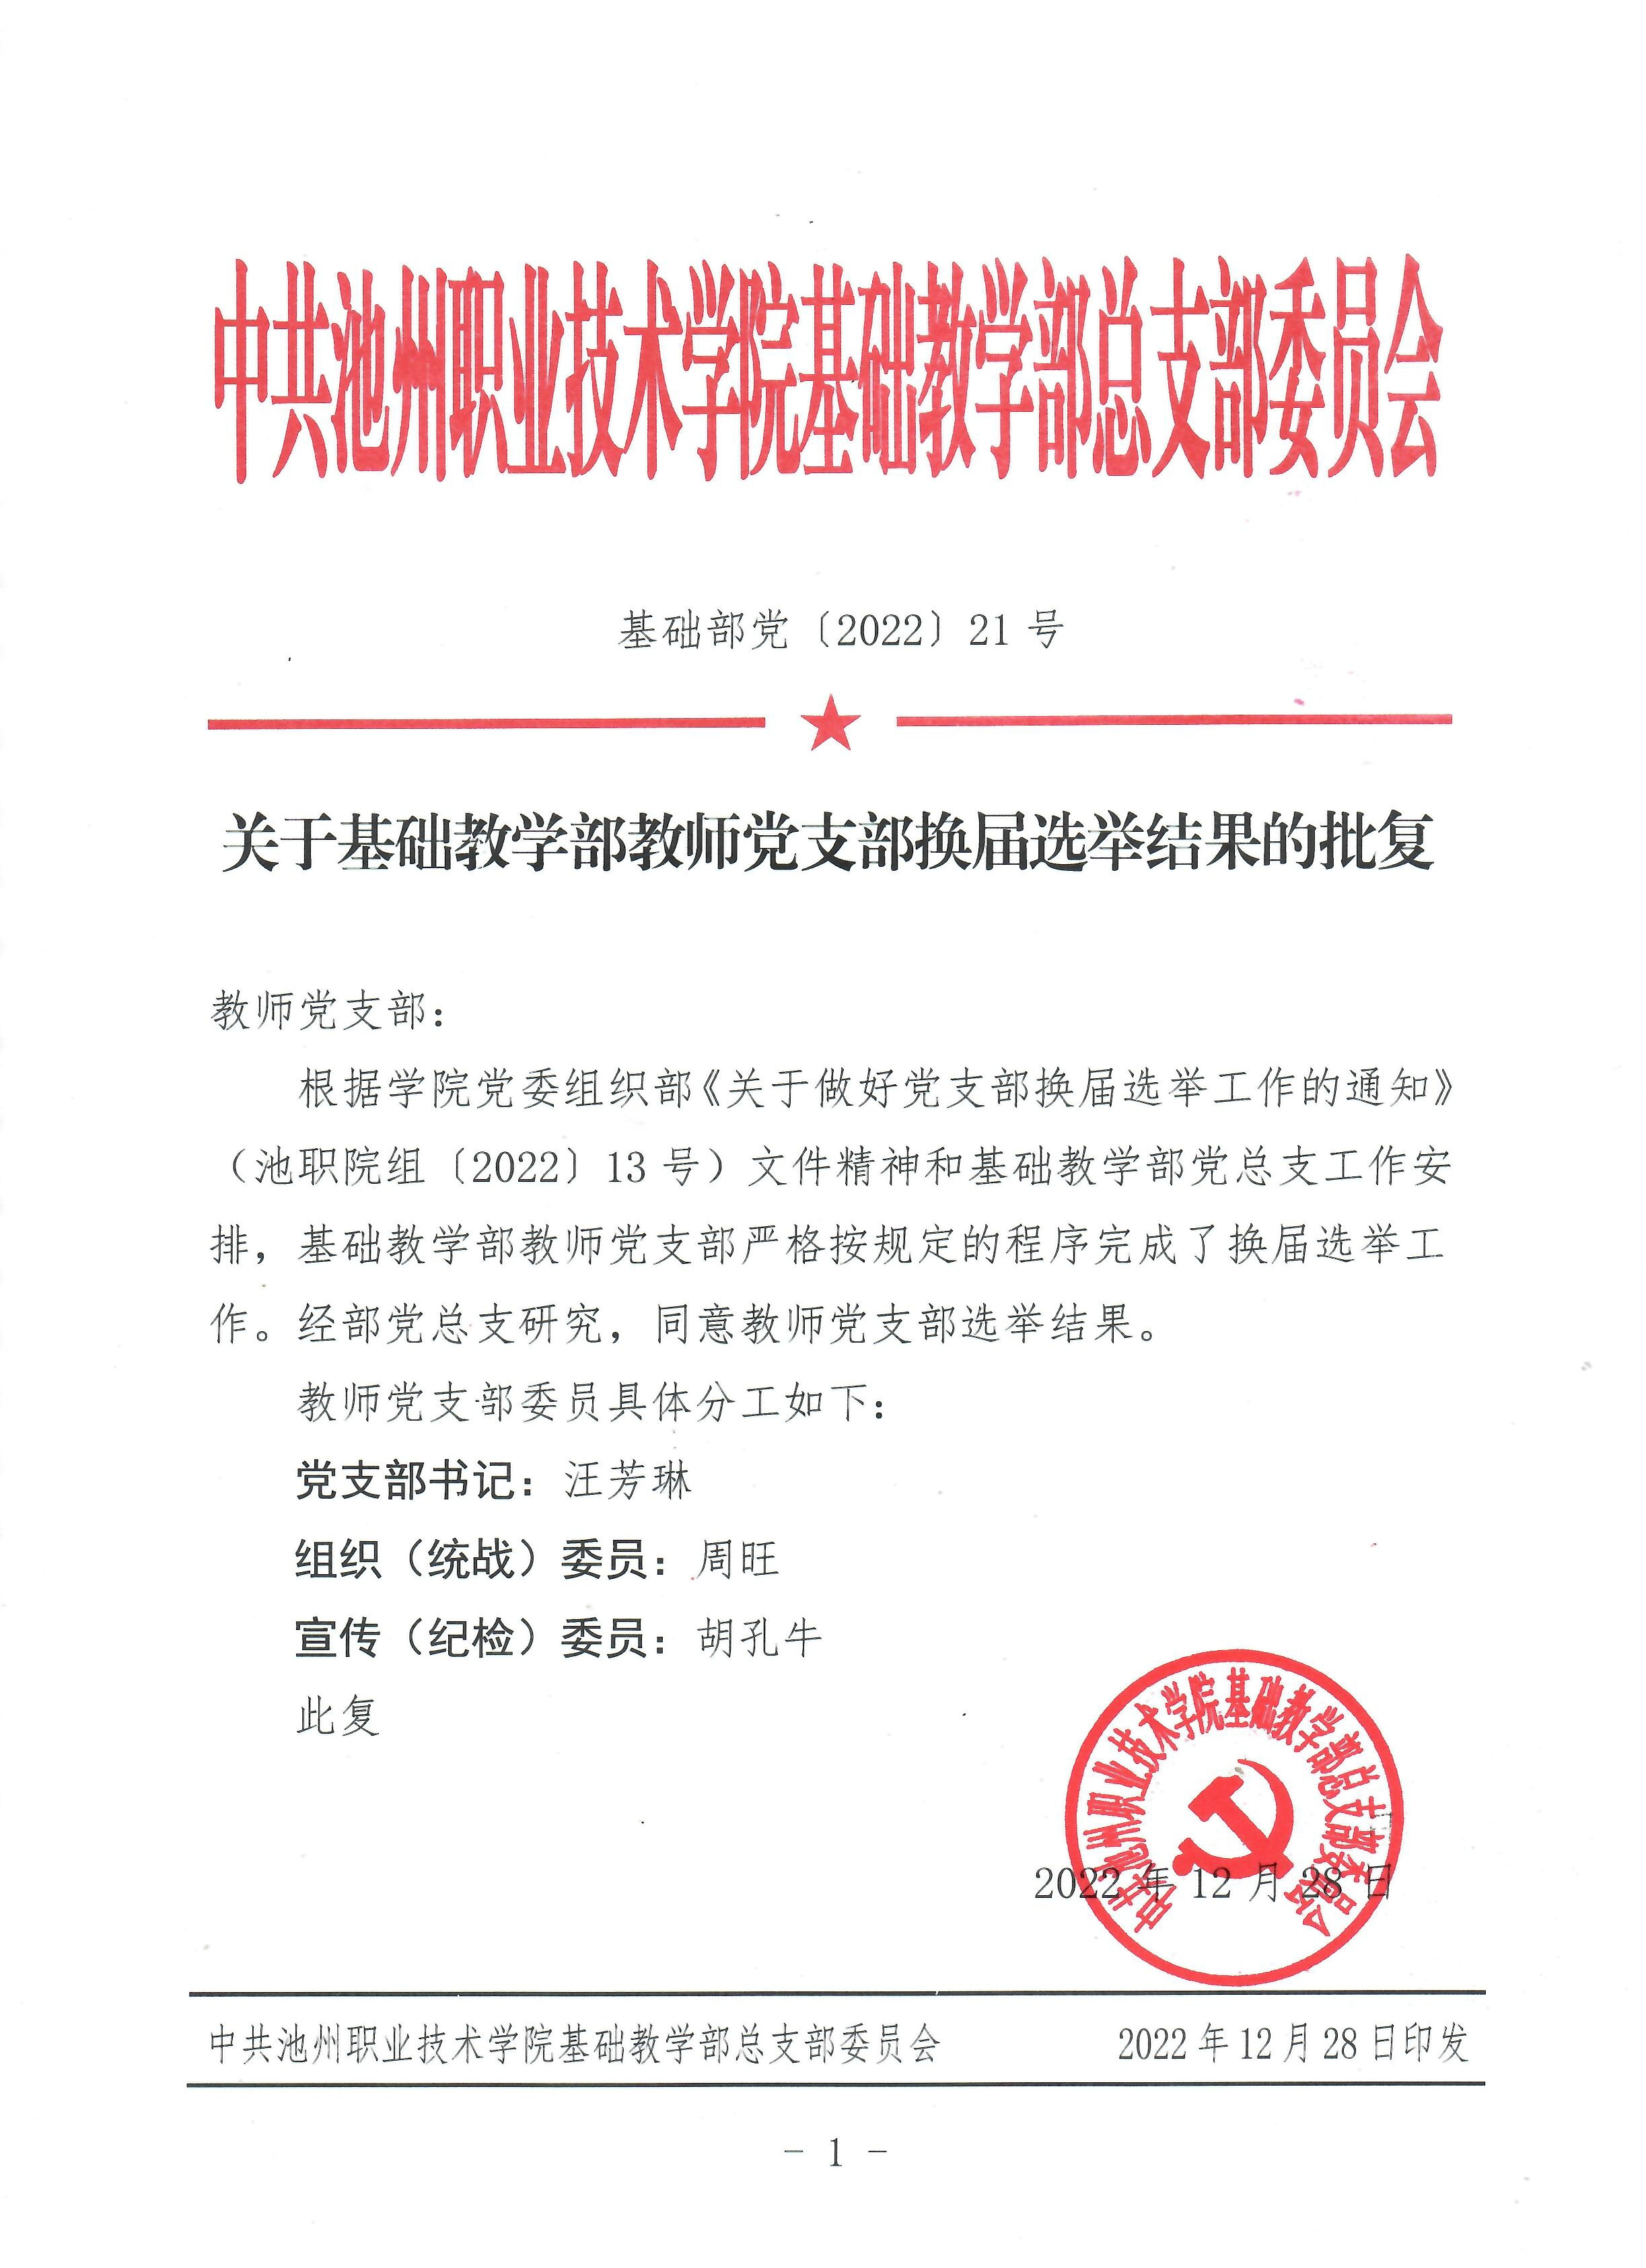 平阳县中医院迁扩建工程项目水土保持方案报告书的批复